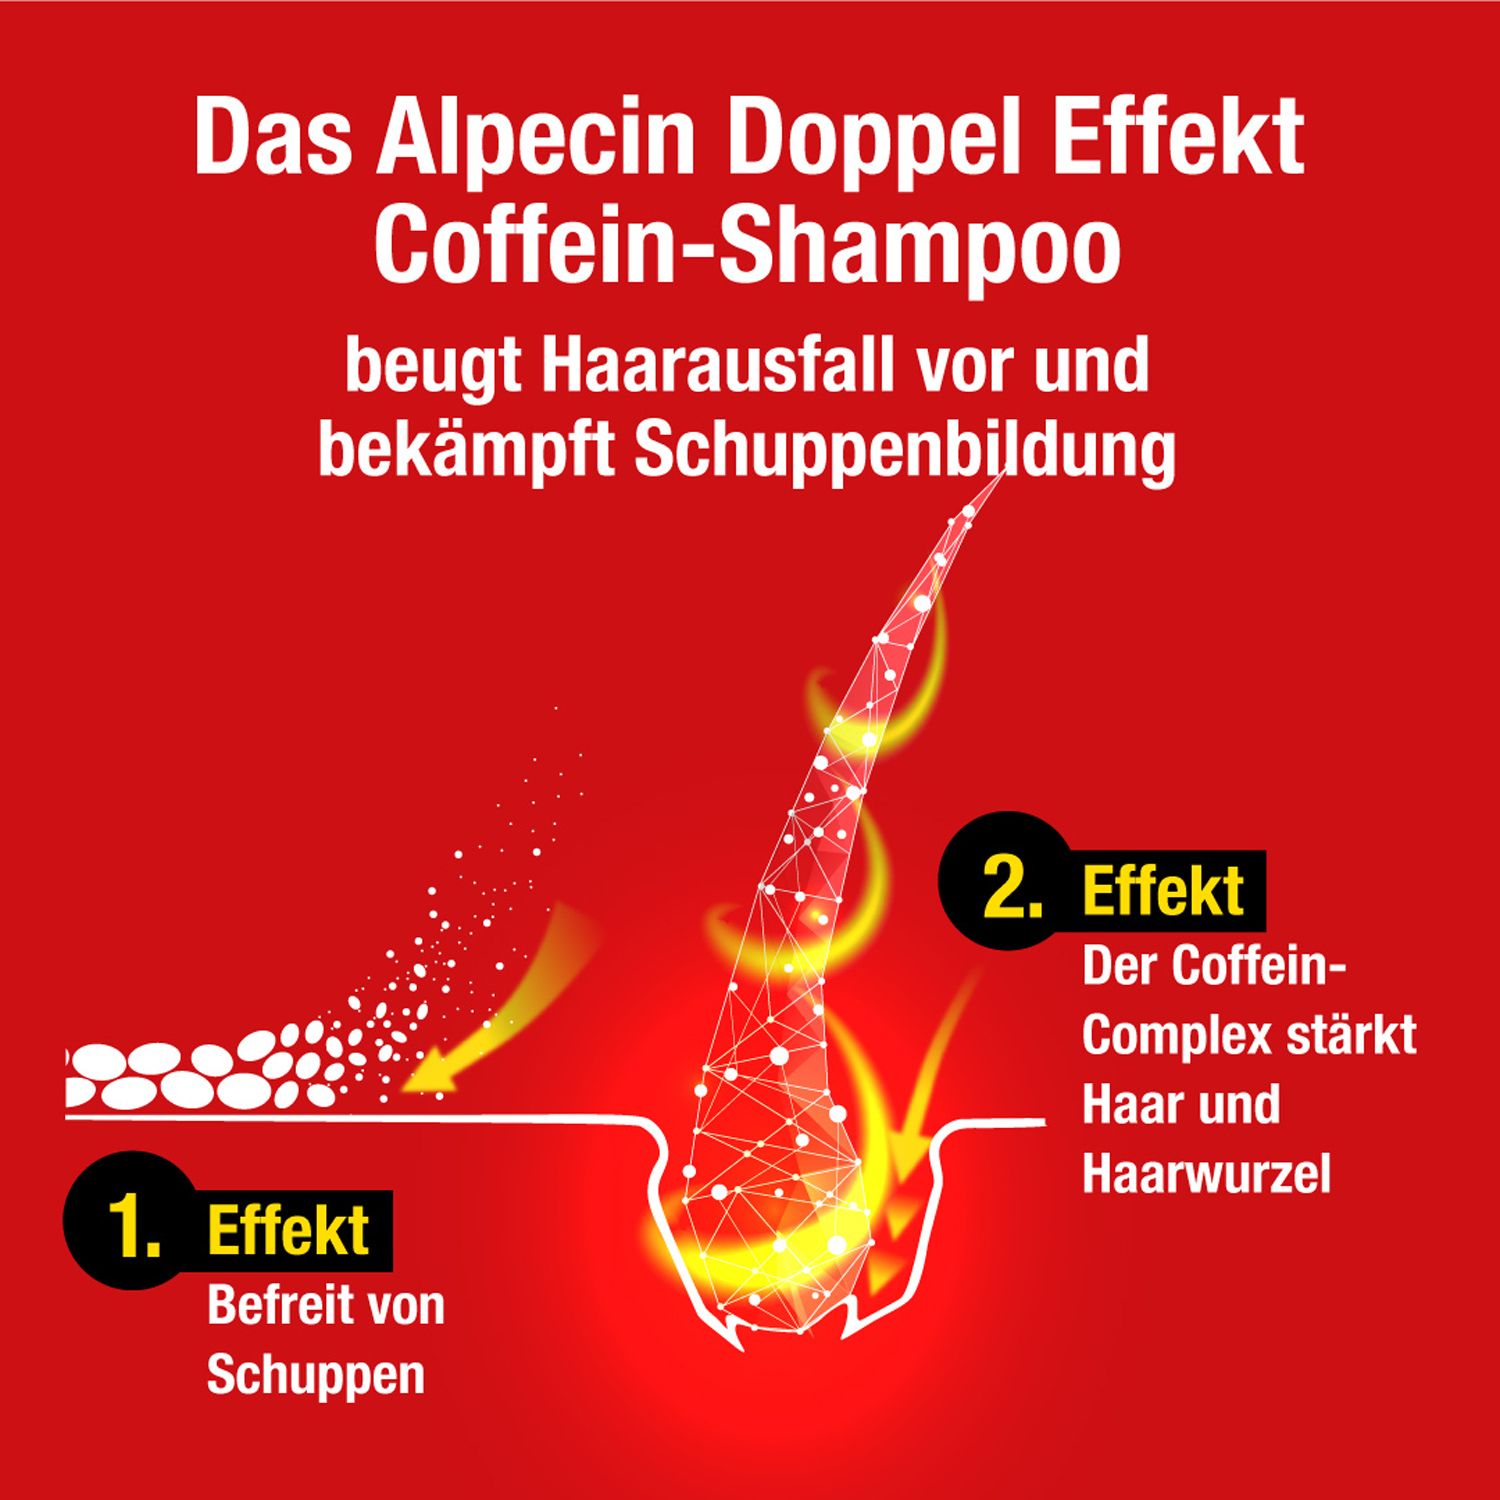 Alpecin Doppel-Effekt Shampoo